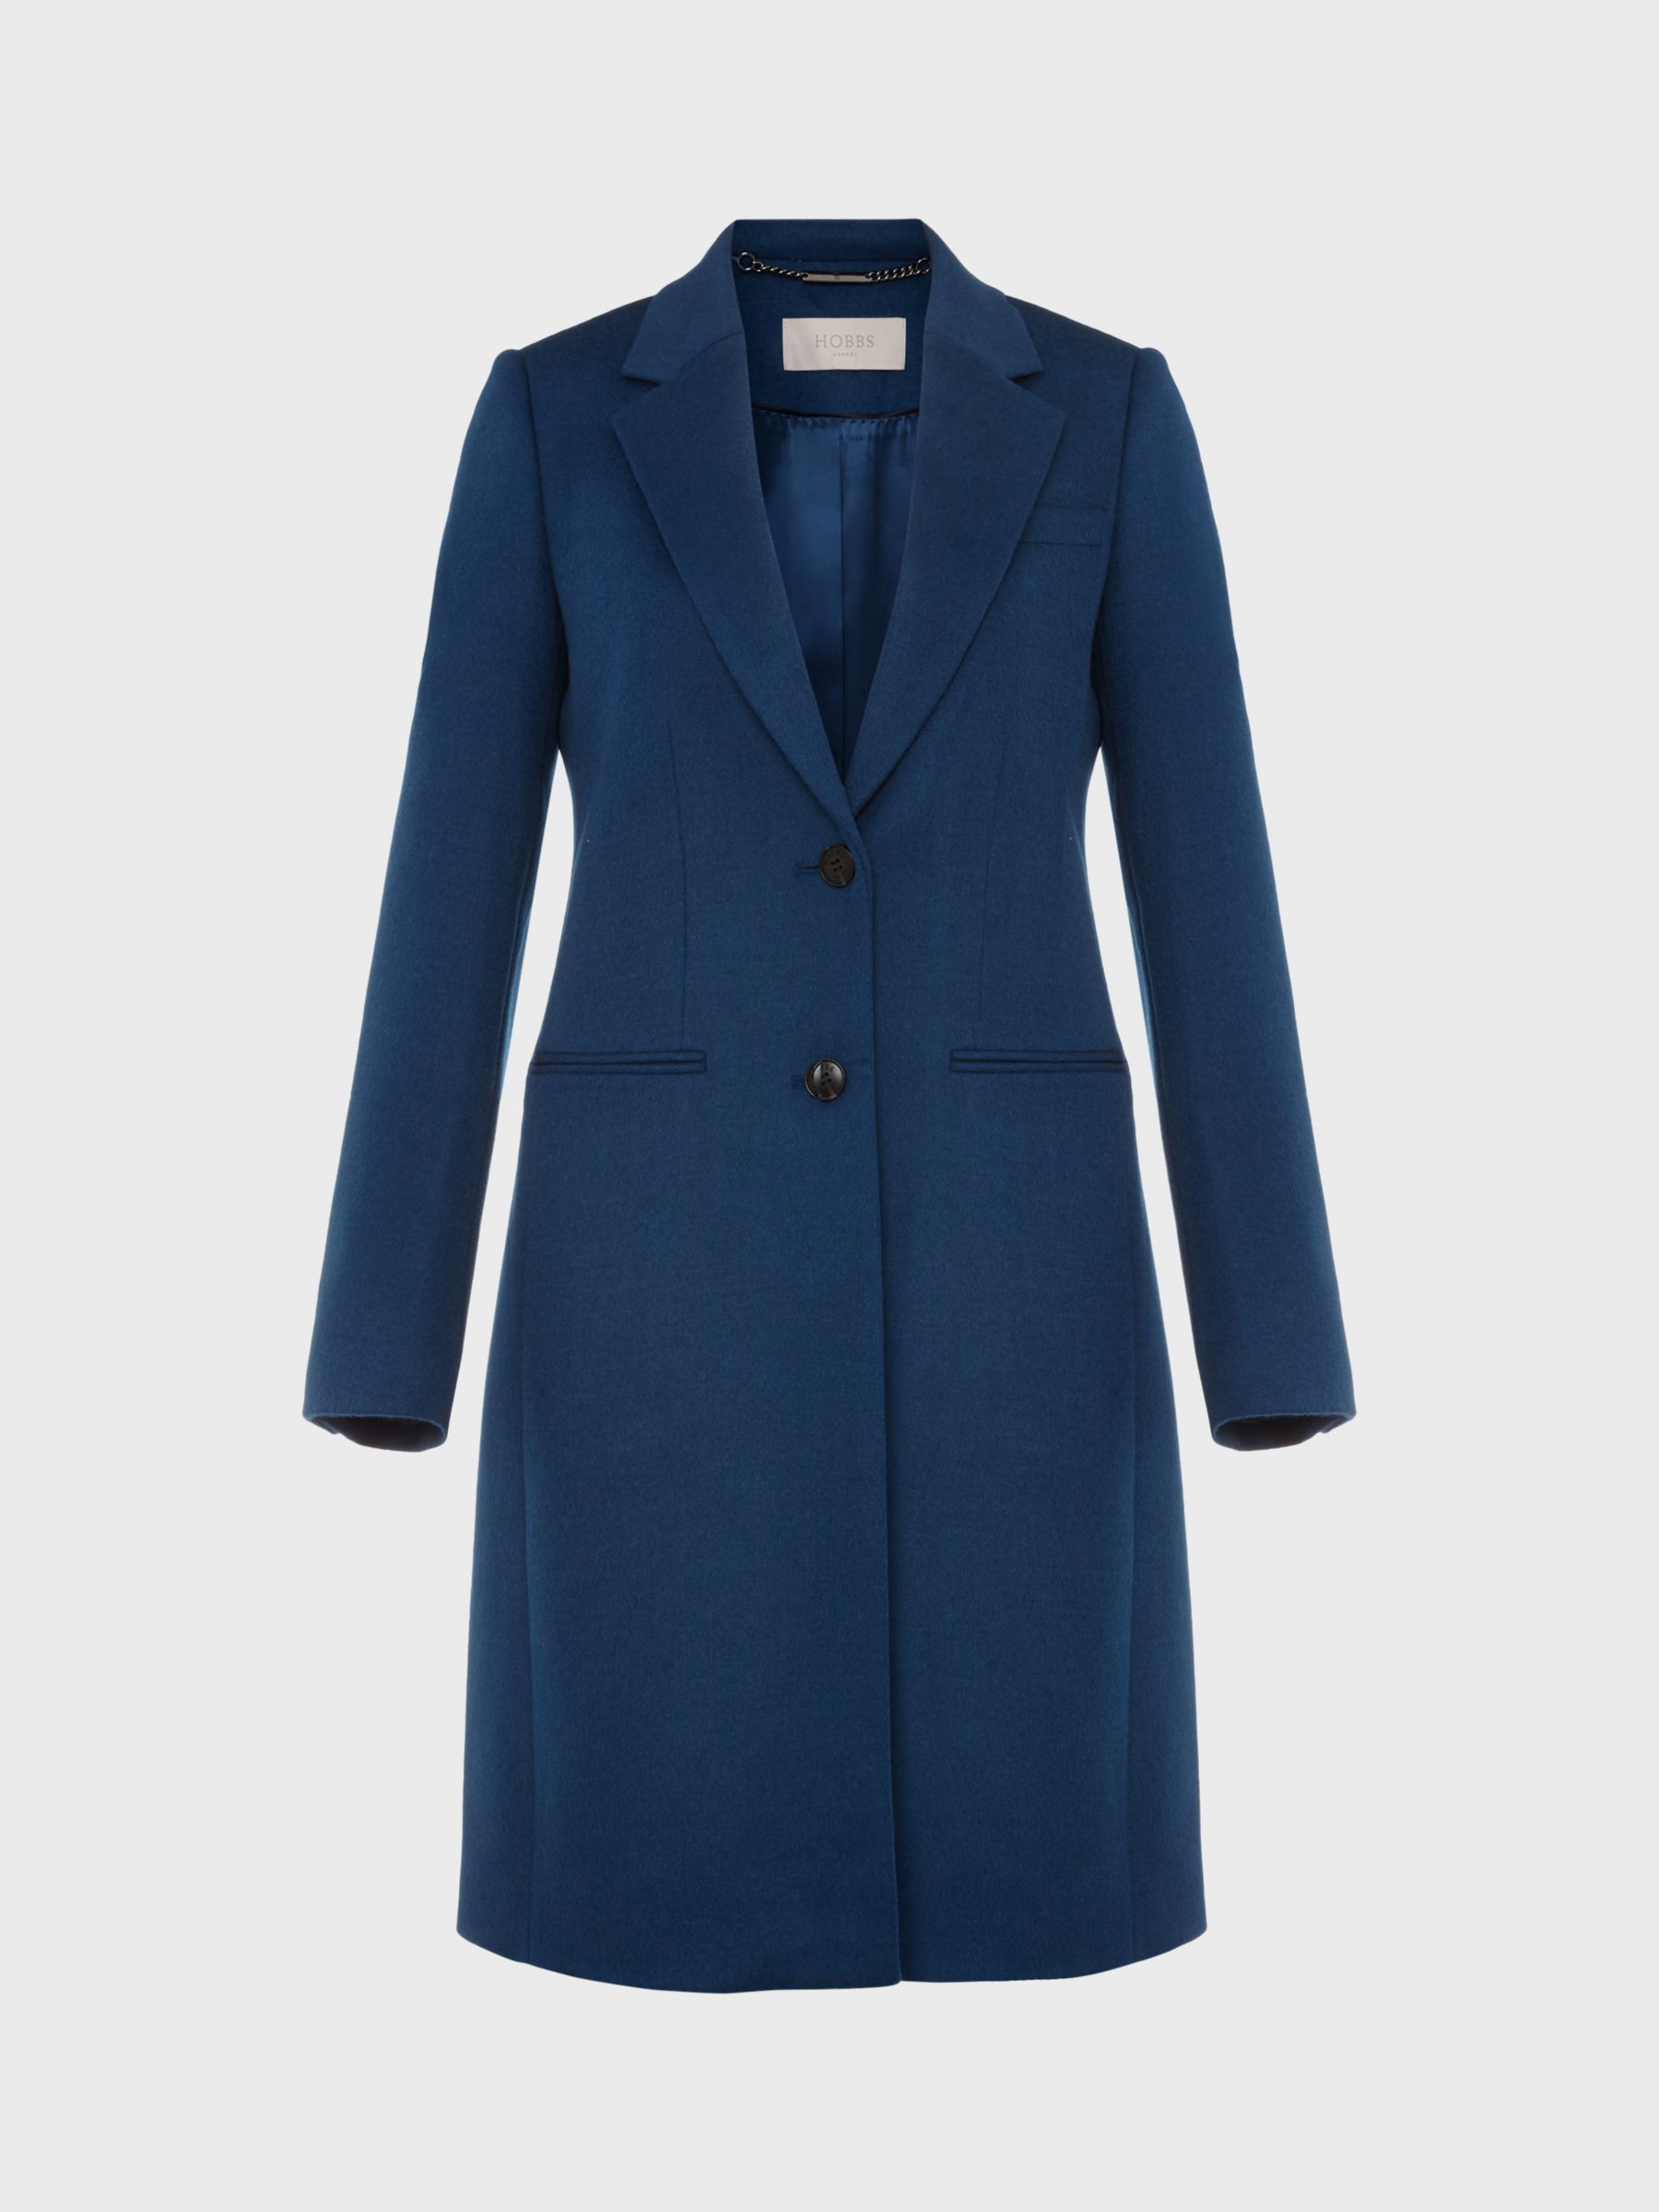 Hobbs Tilda Longline Wool Coat, Steel Blue at John Lewis & Partners